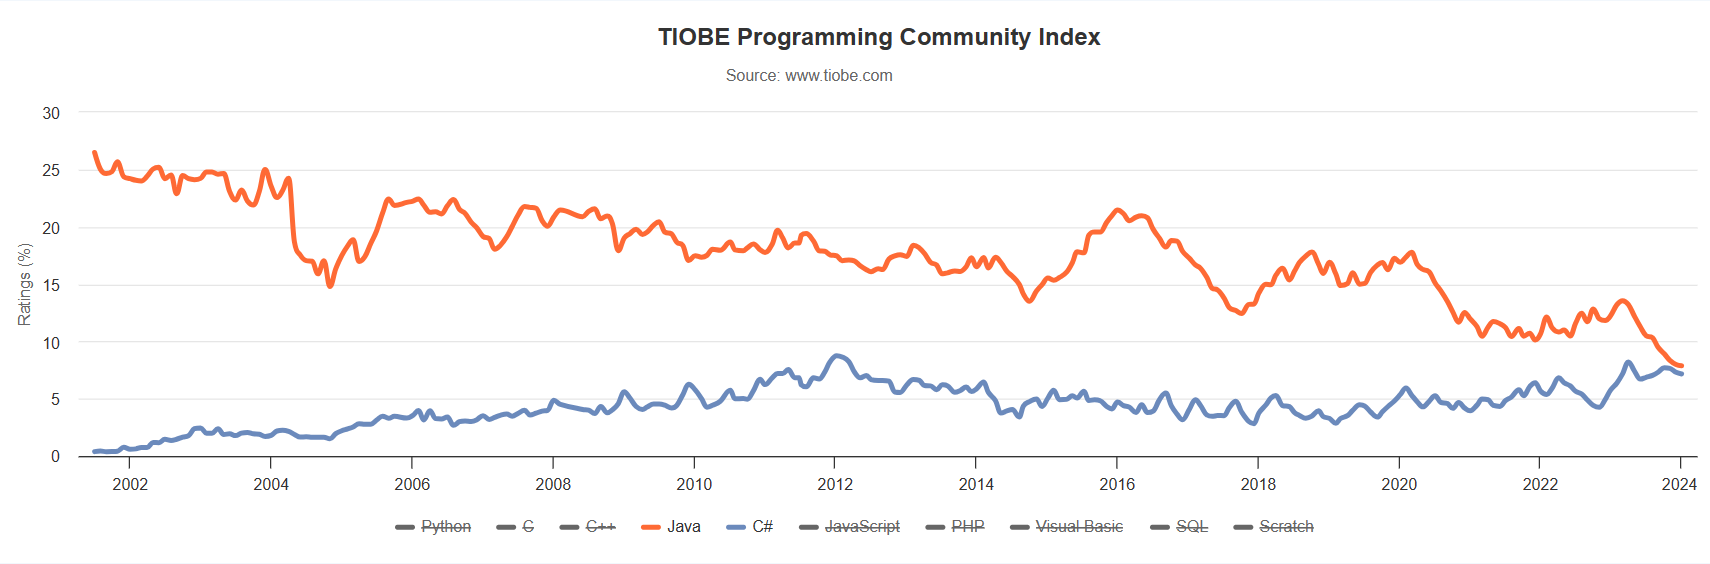 23 年来首次，C# 荣获 TIOBE 2023 年度编程语言